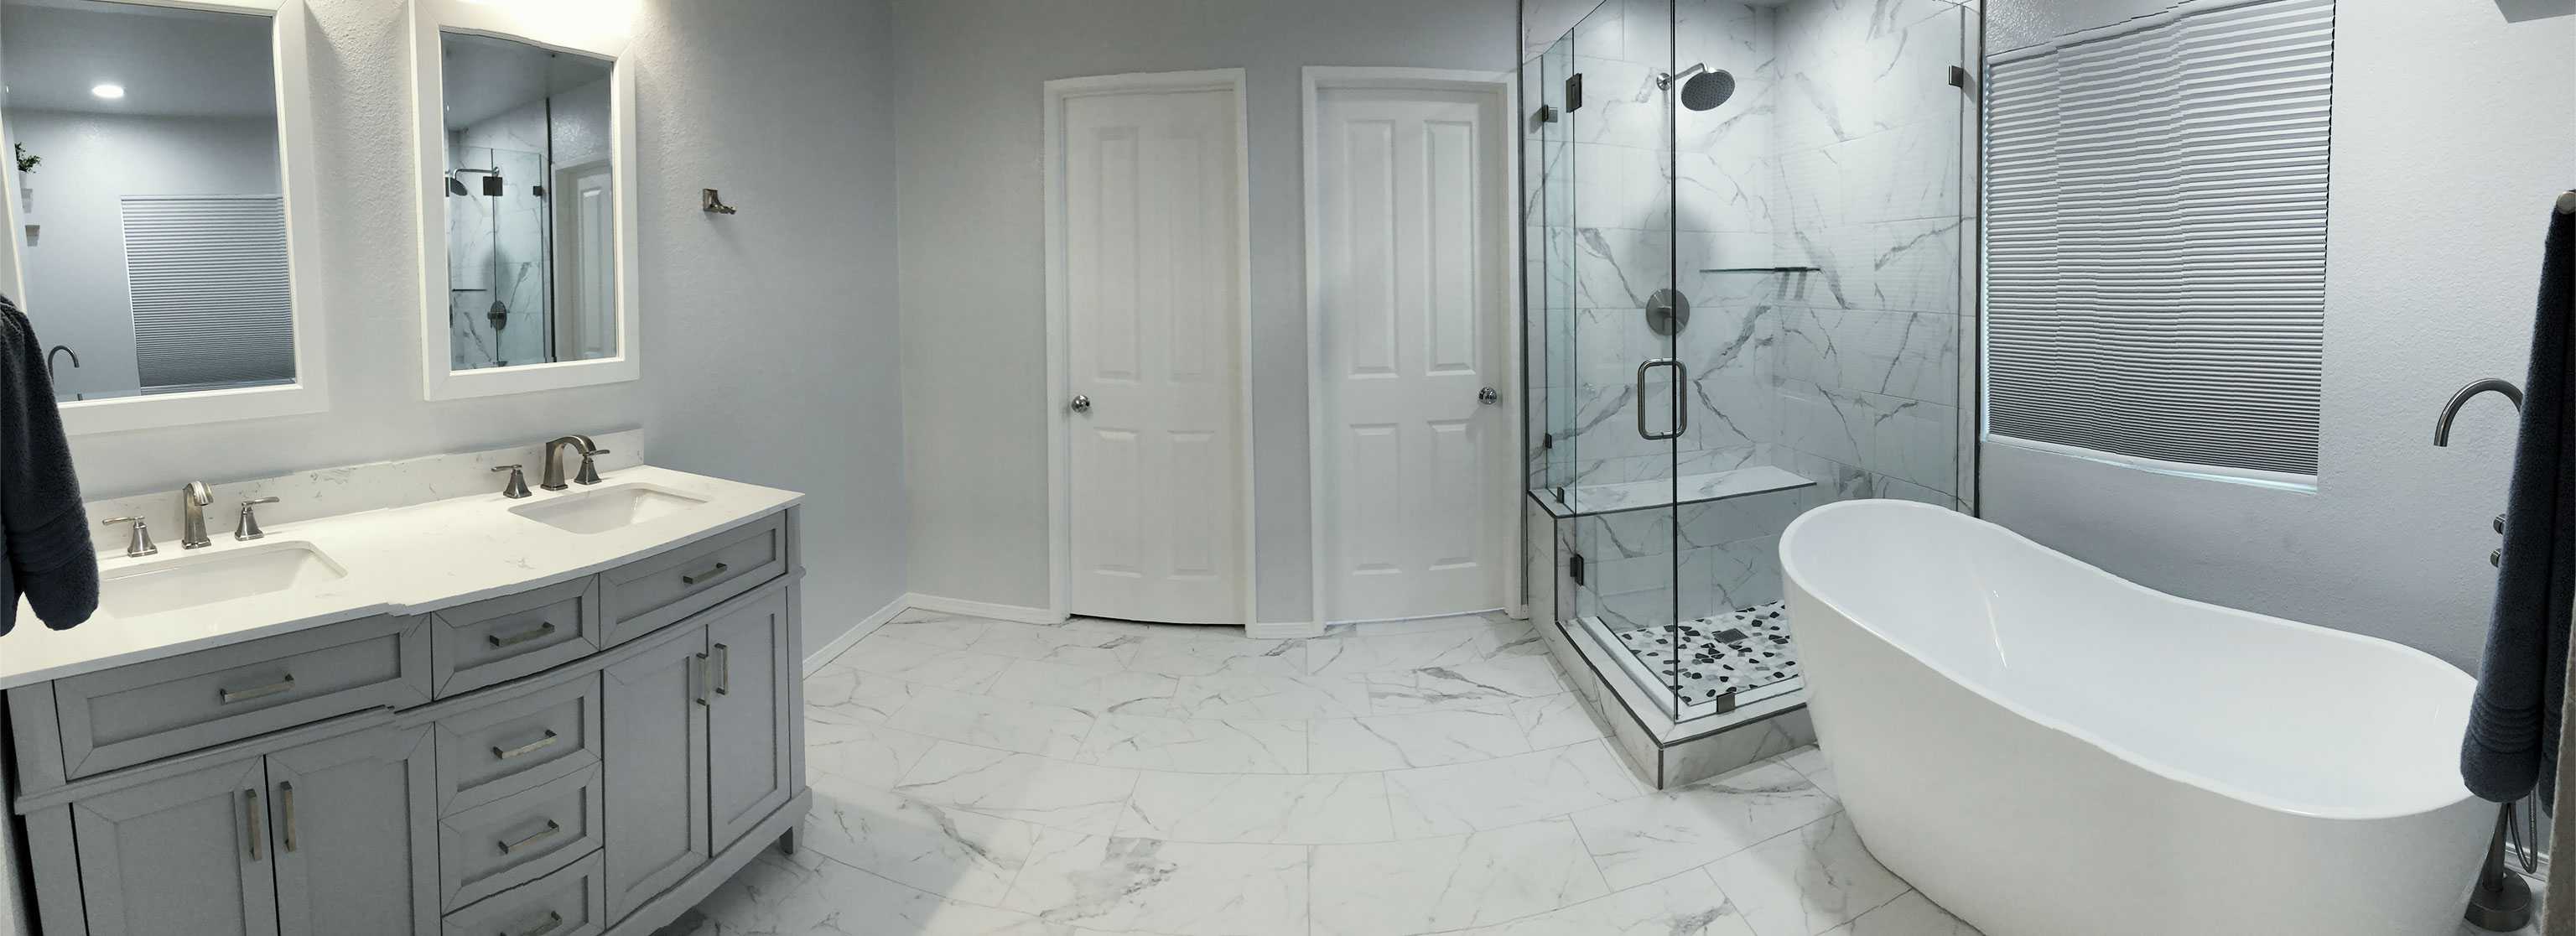 bathroom-remodel-A2M-Contractors